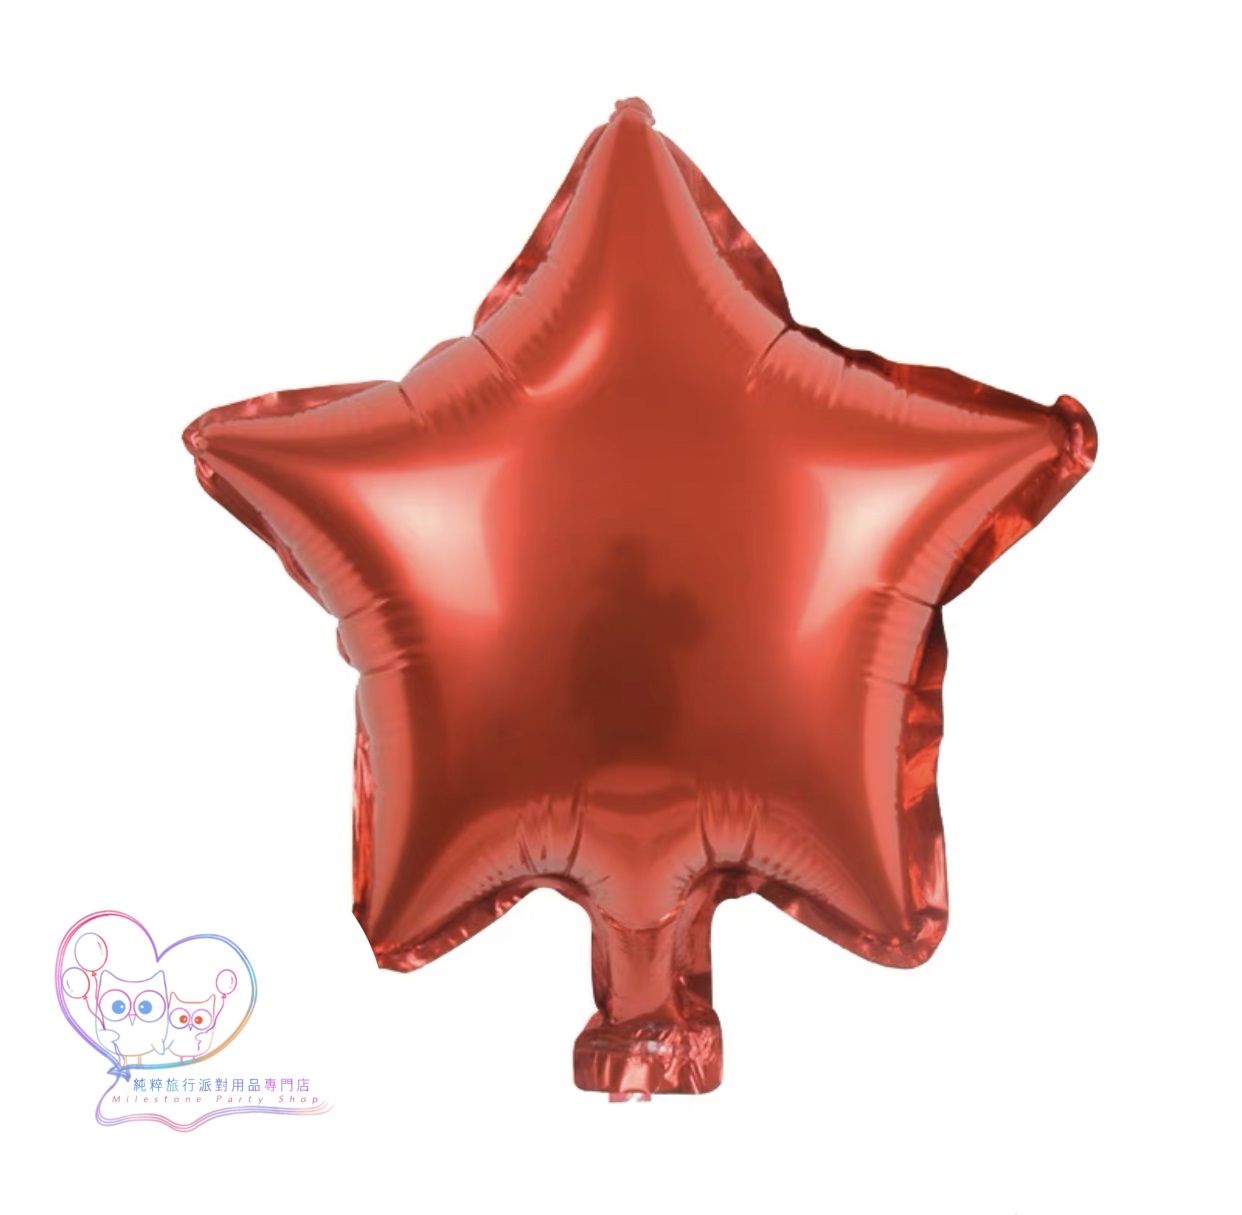 10吋星星鋁膜氣球 (紅色) 10S6